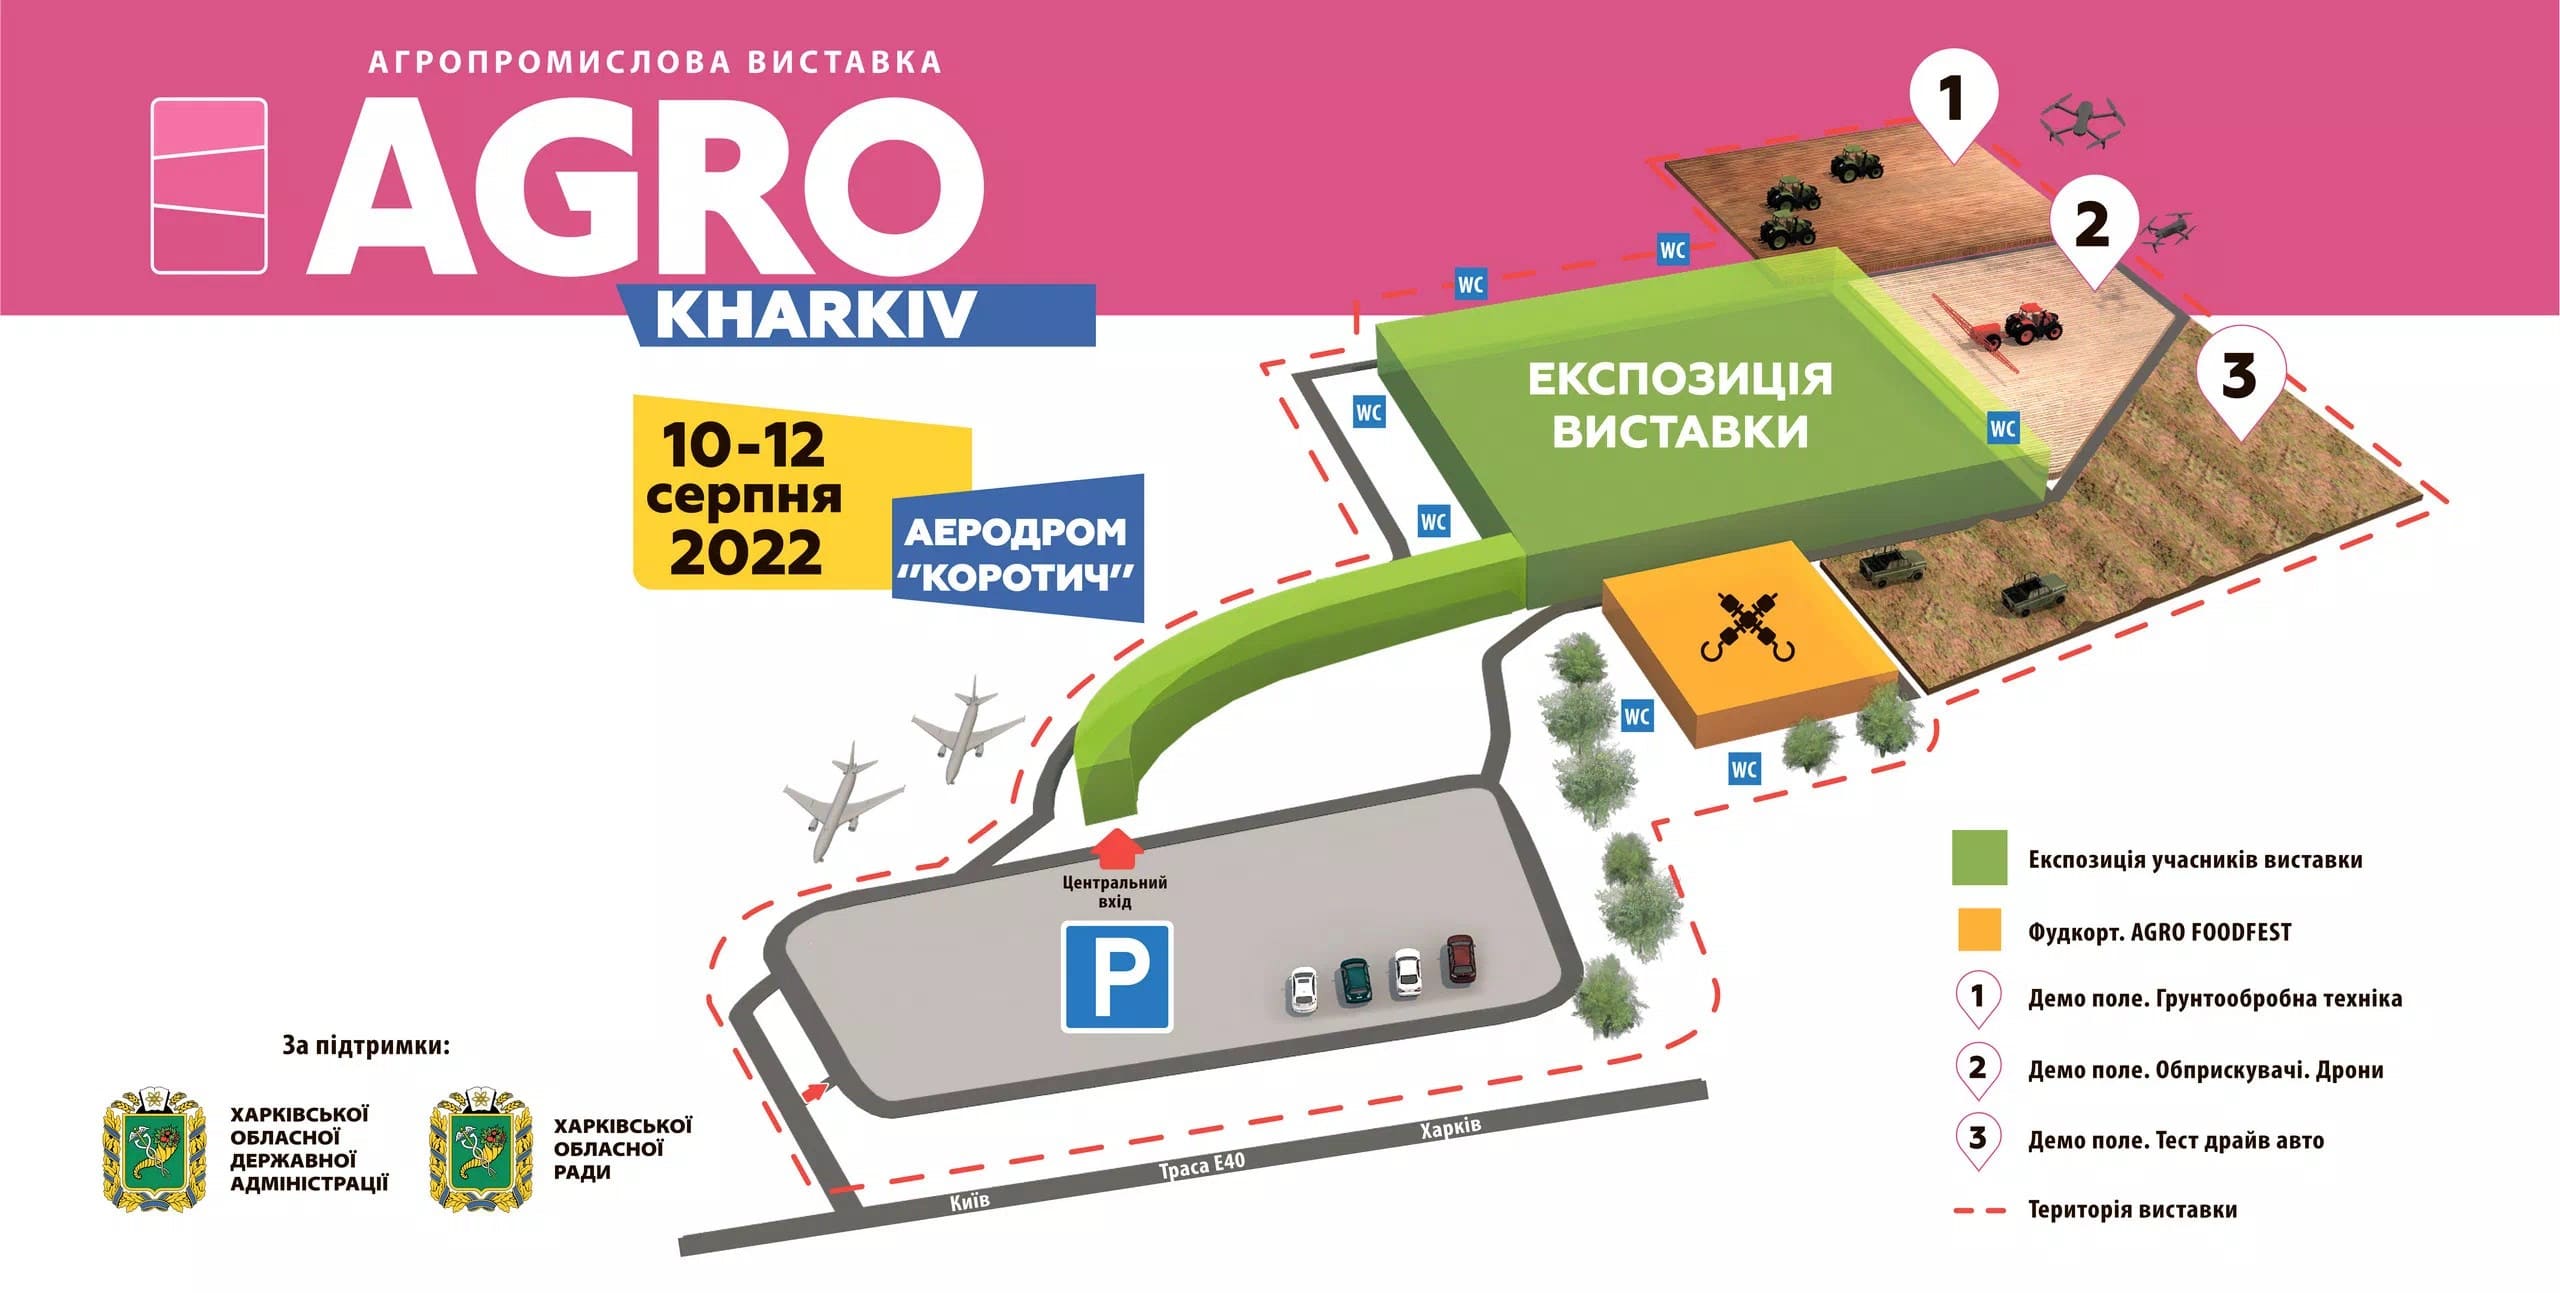 Схема виставки AGRO KHARKIV 2022 (клікніть, щоб збільшити зображення)